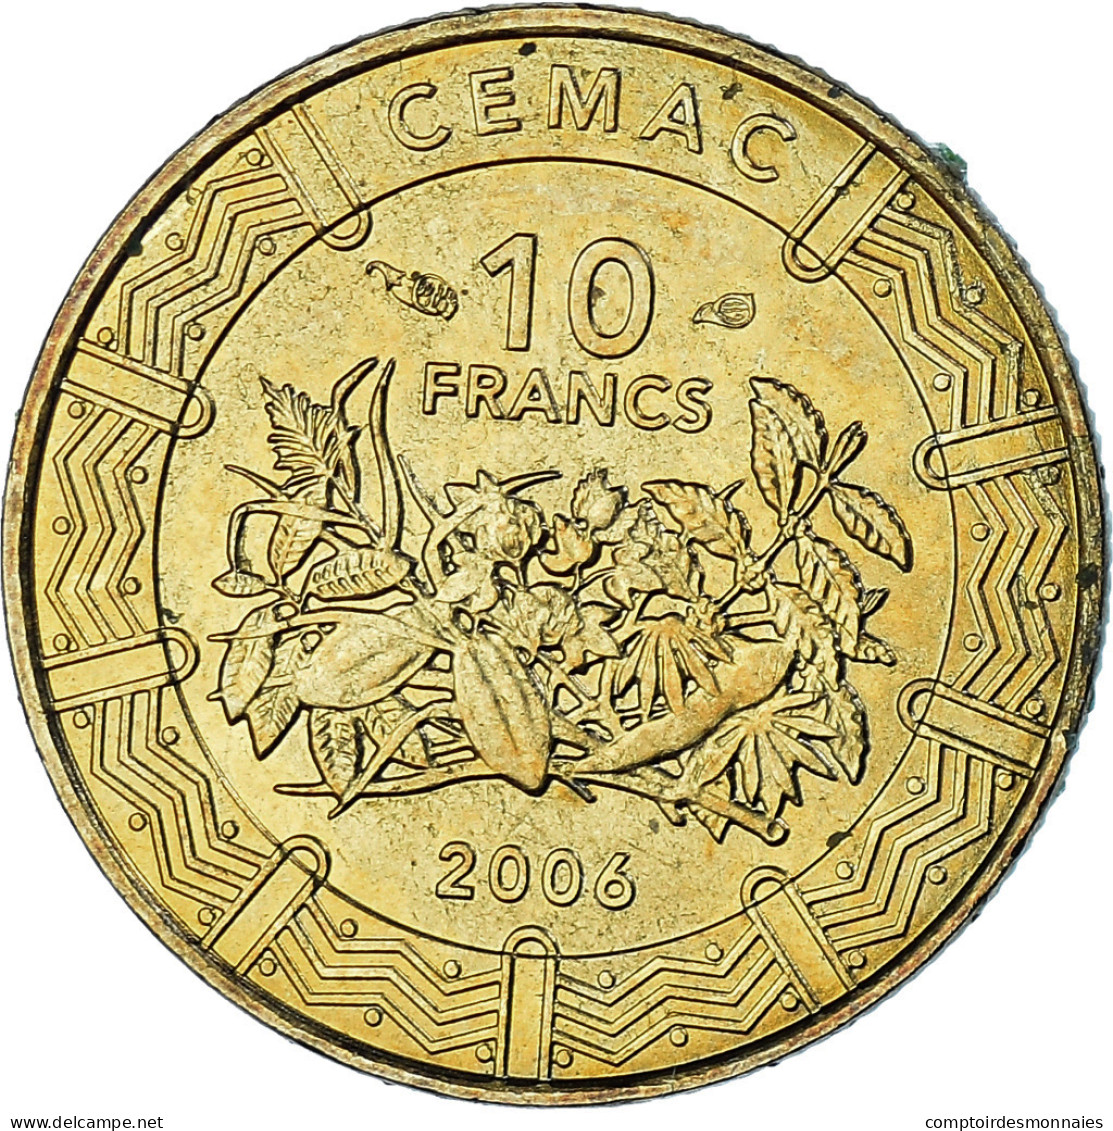 Monnaie, États De L'Afrique Centrale, 10 Francs, 2006, Paris, SPL+, Laiton - Cameroun